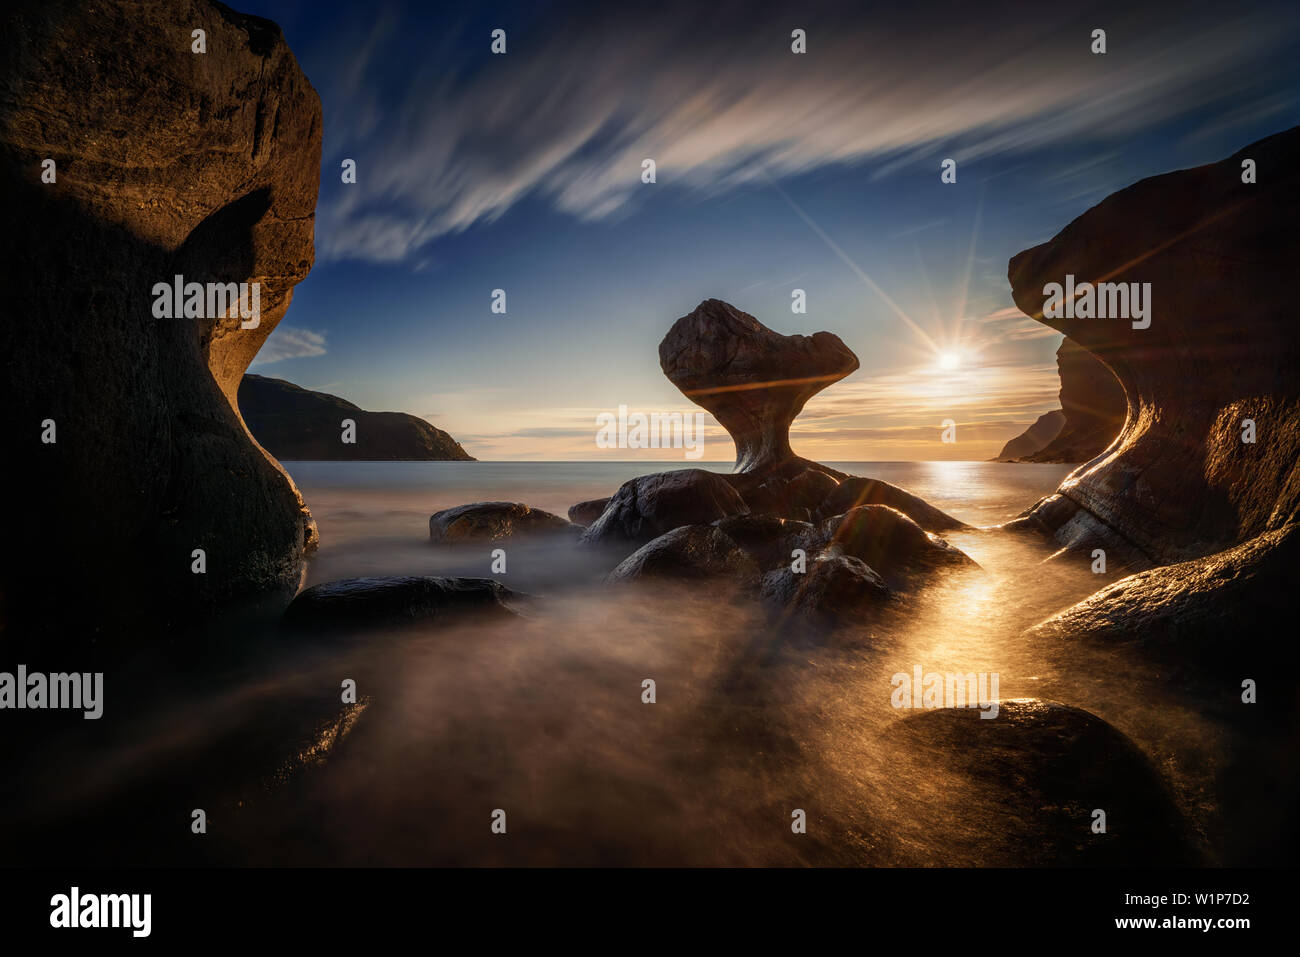 Kannestein Rock on Maloy island in sunset light, Norway Stock Photo